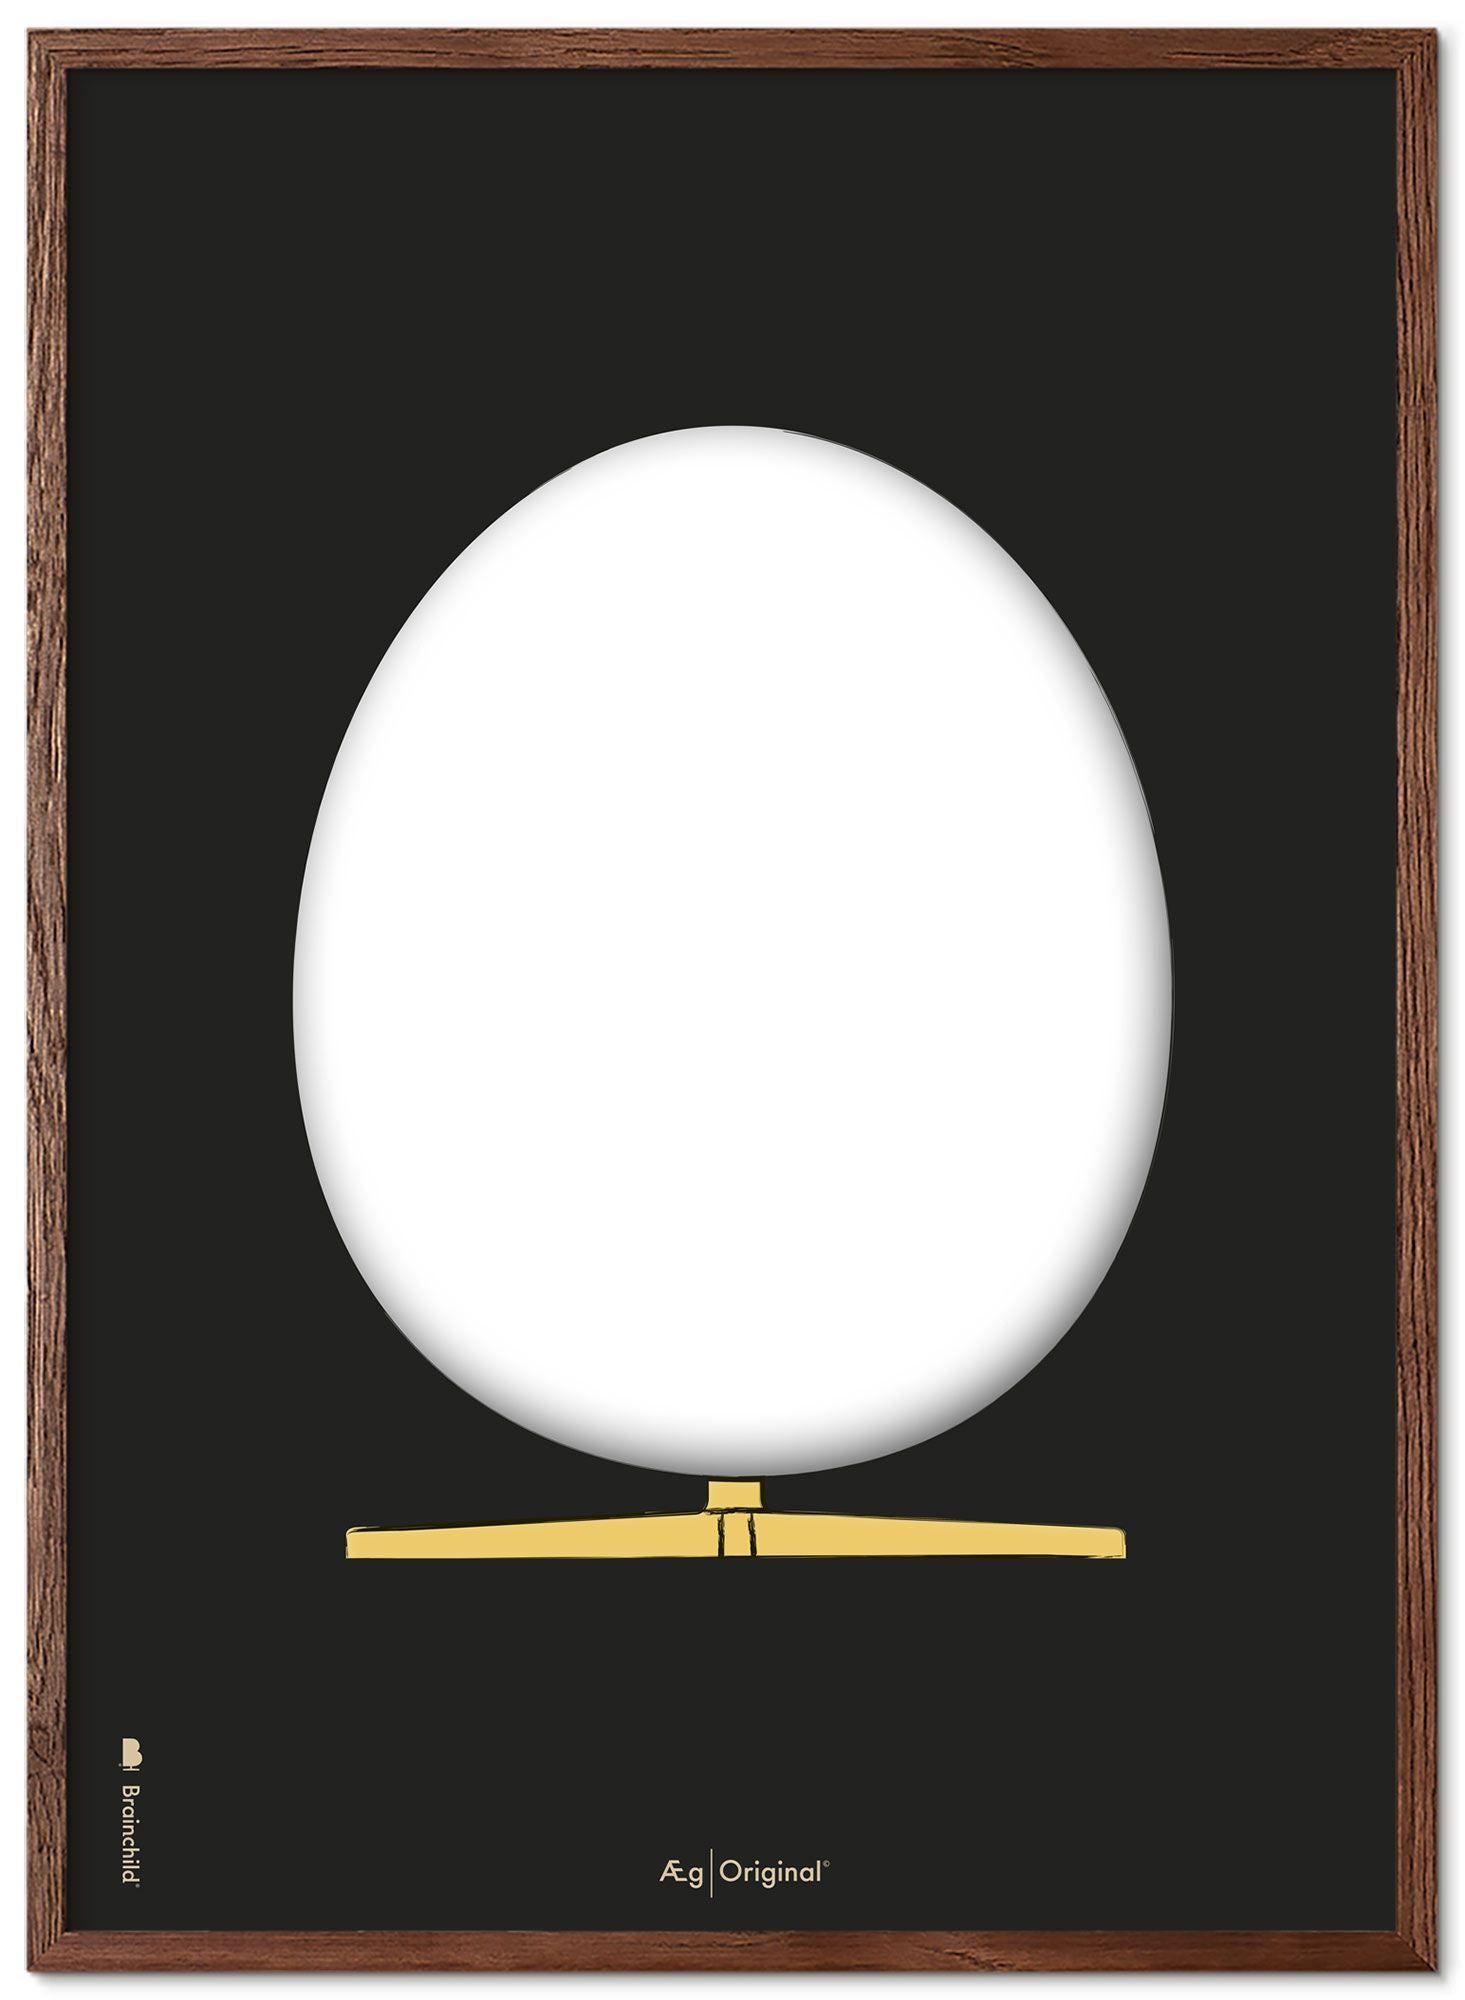 Prepare el marco de póster de boceto de diseño de huevo hecho de madera oscura de 70x100 cm, fondo negro